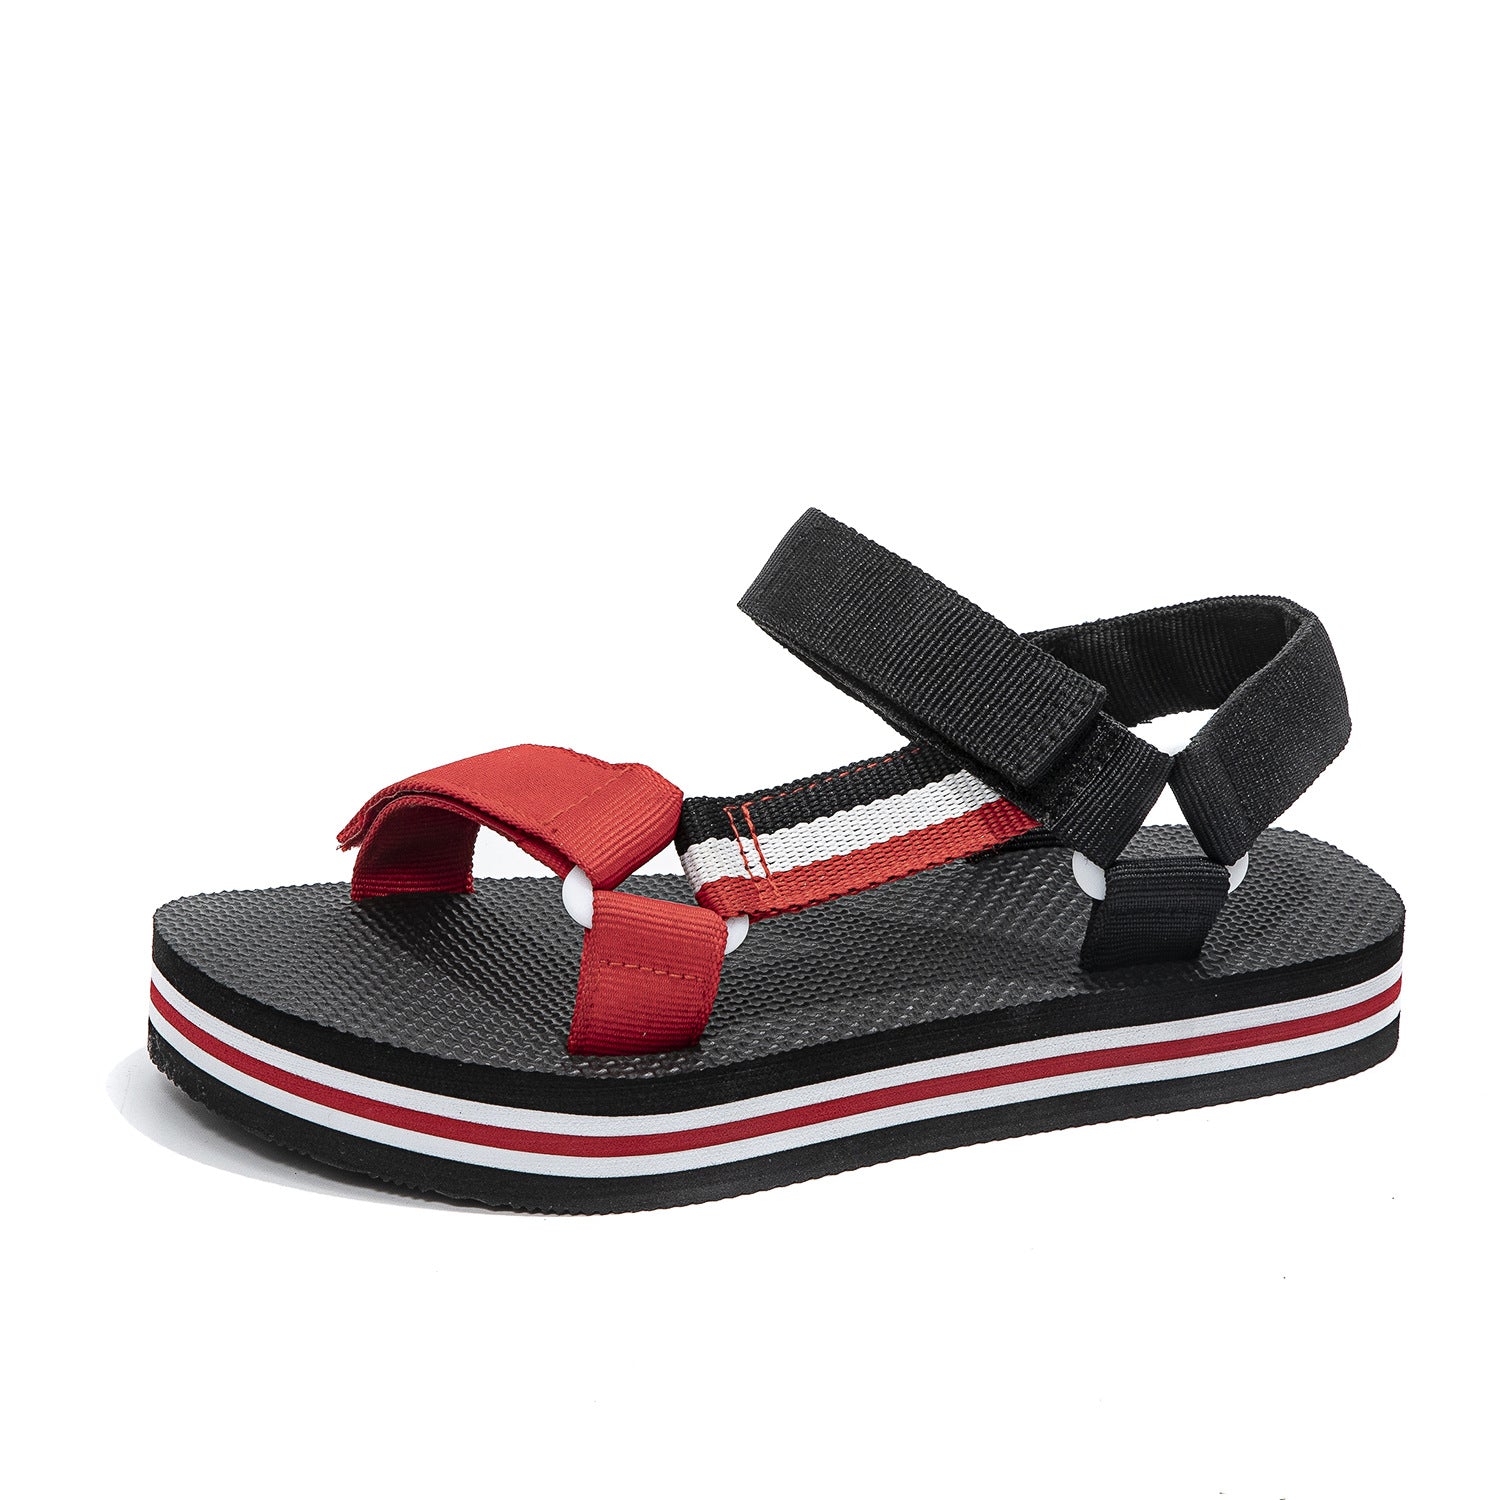 Men's Summer Wear Lightweight Comfortable Wading Driving Sandals